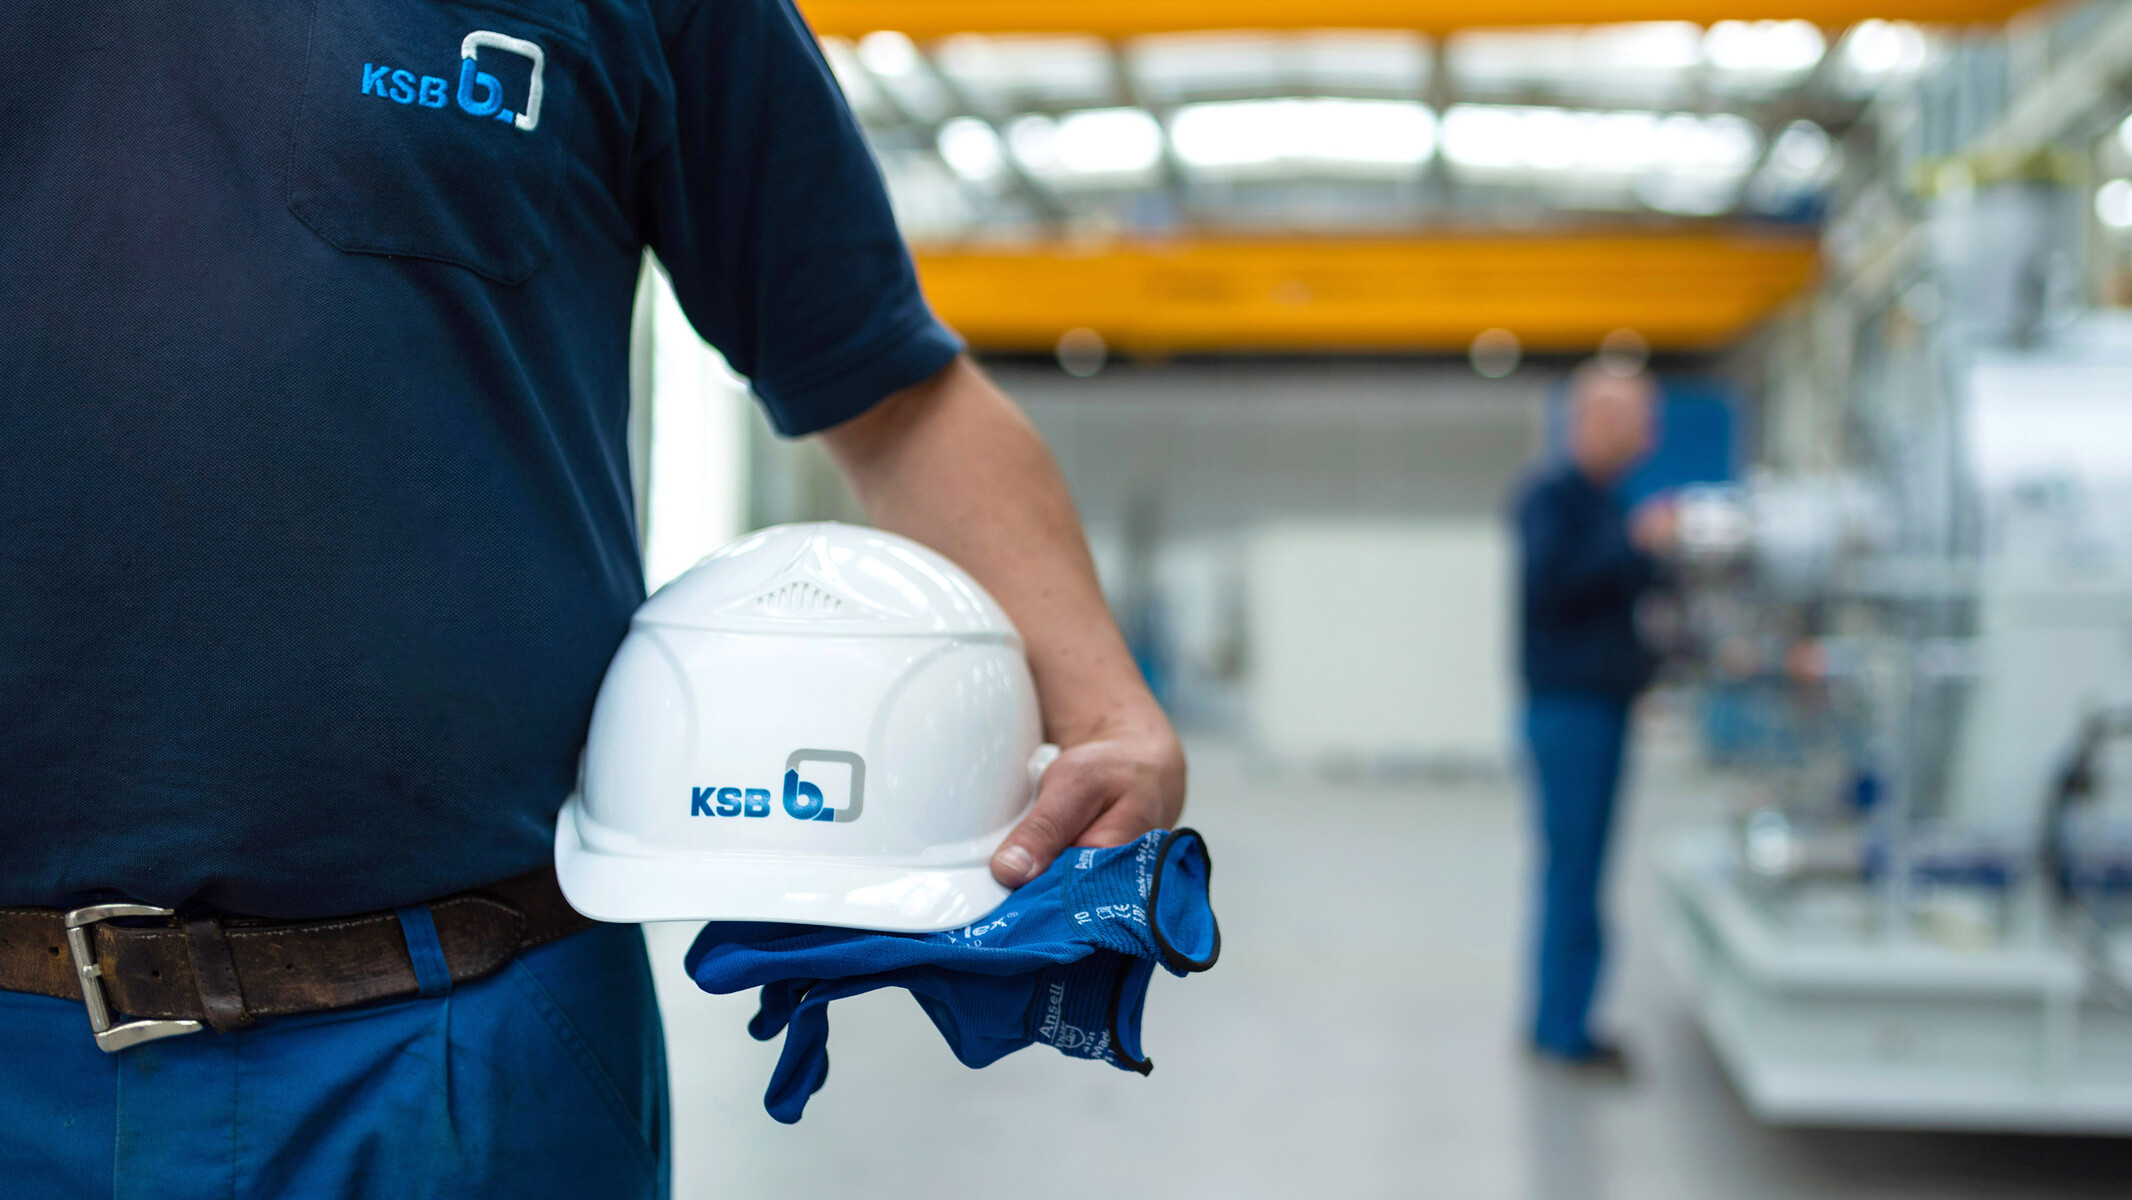 KSB Mitarbeiter hält einen Helm und Handschuhe